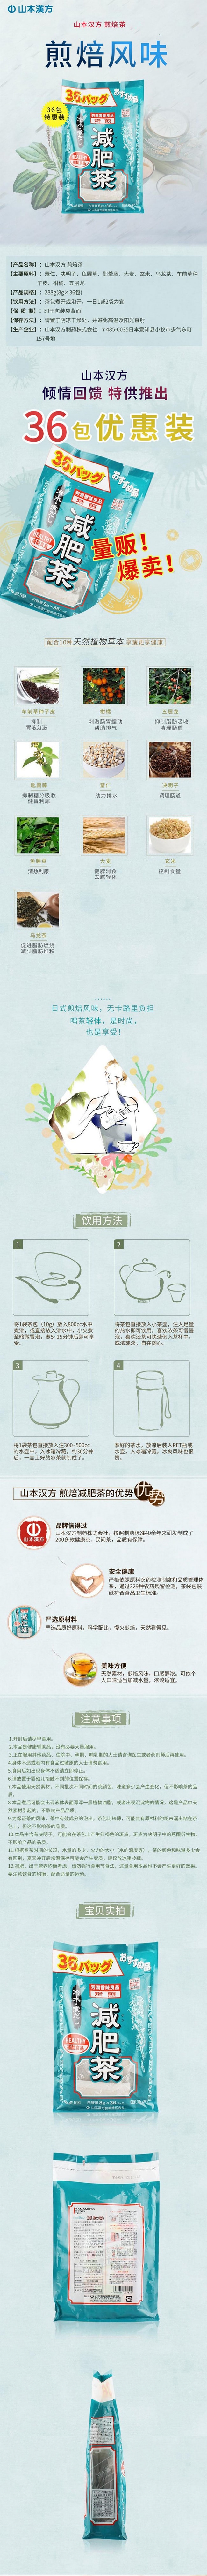 【日本直效郵件】YAMAMOTO山本漢方製藥 超值裝煎焙減肥茶 8g*36包入